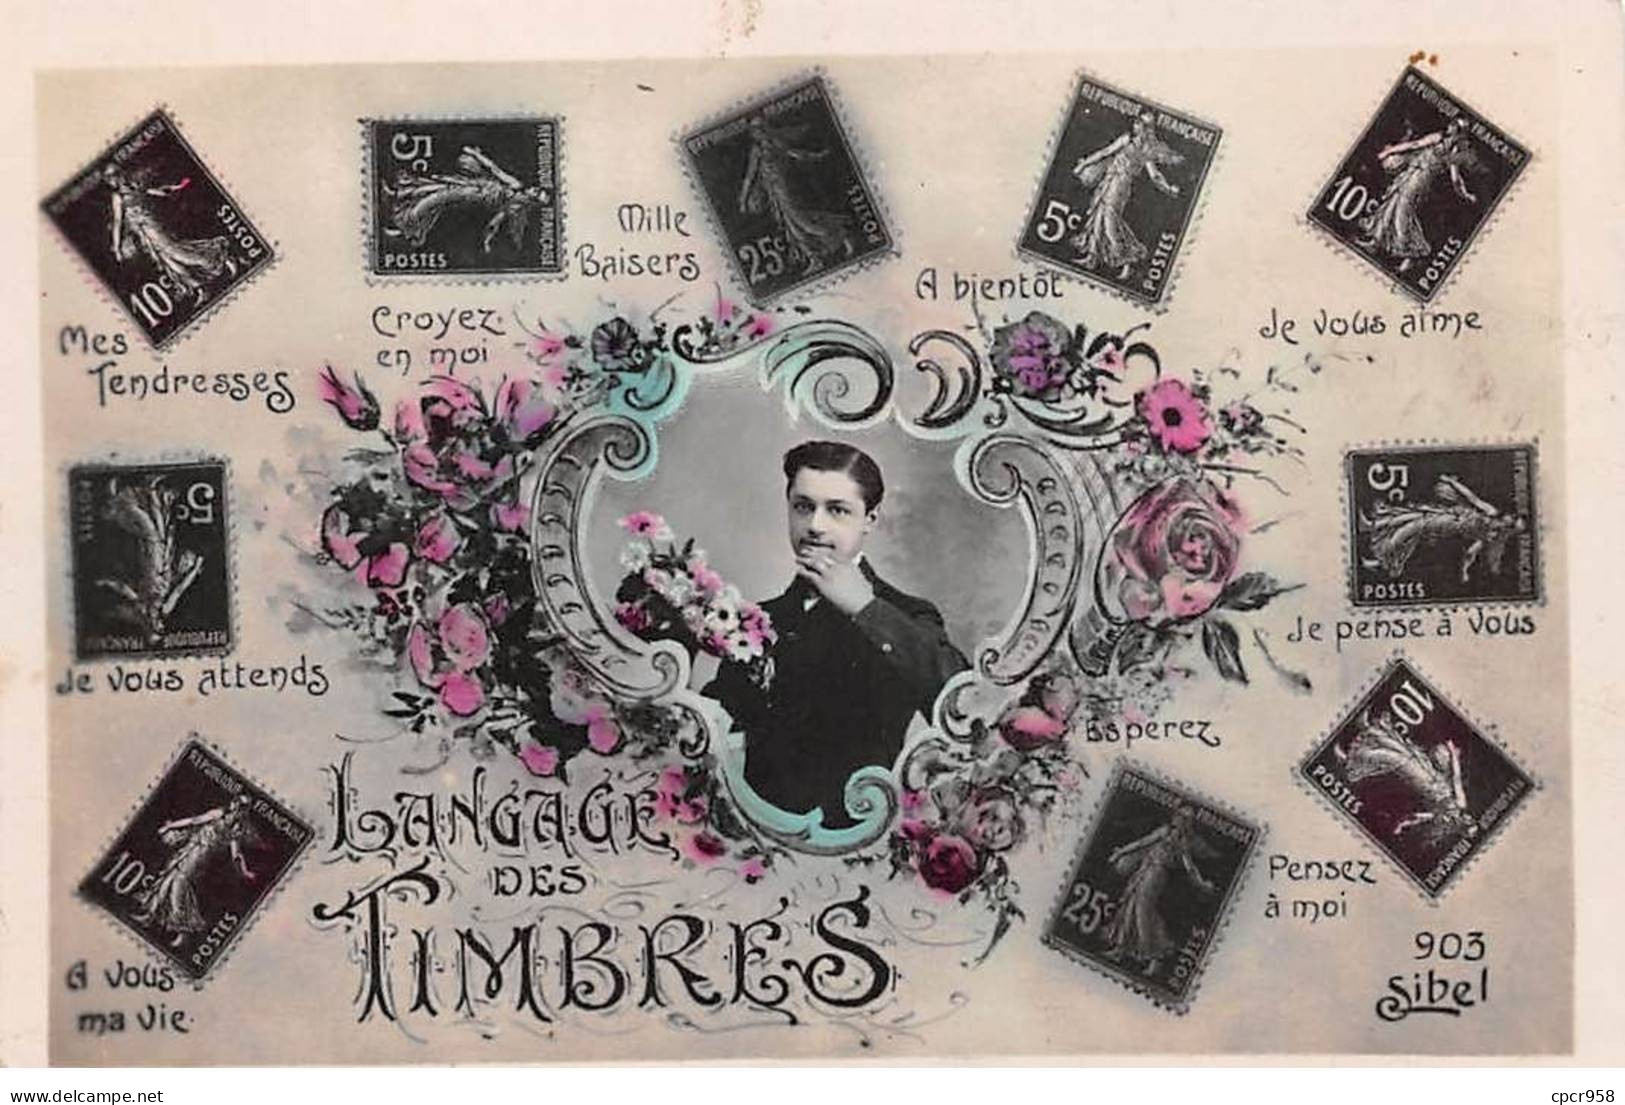 Représentations Timbres - N°87846 - Langage Des Timbres - Mes Tendresses, Croyez En Moi - Homme, Et Fleurs - Briefmarken (Abbildungen)